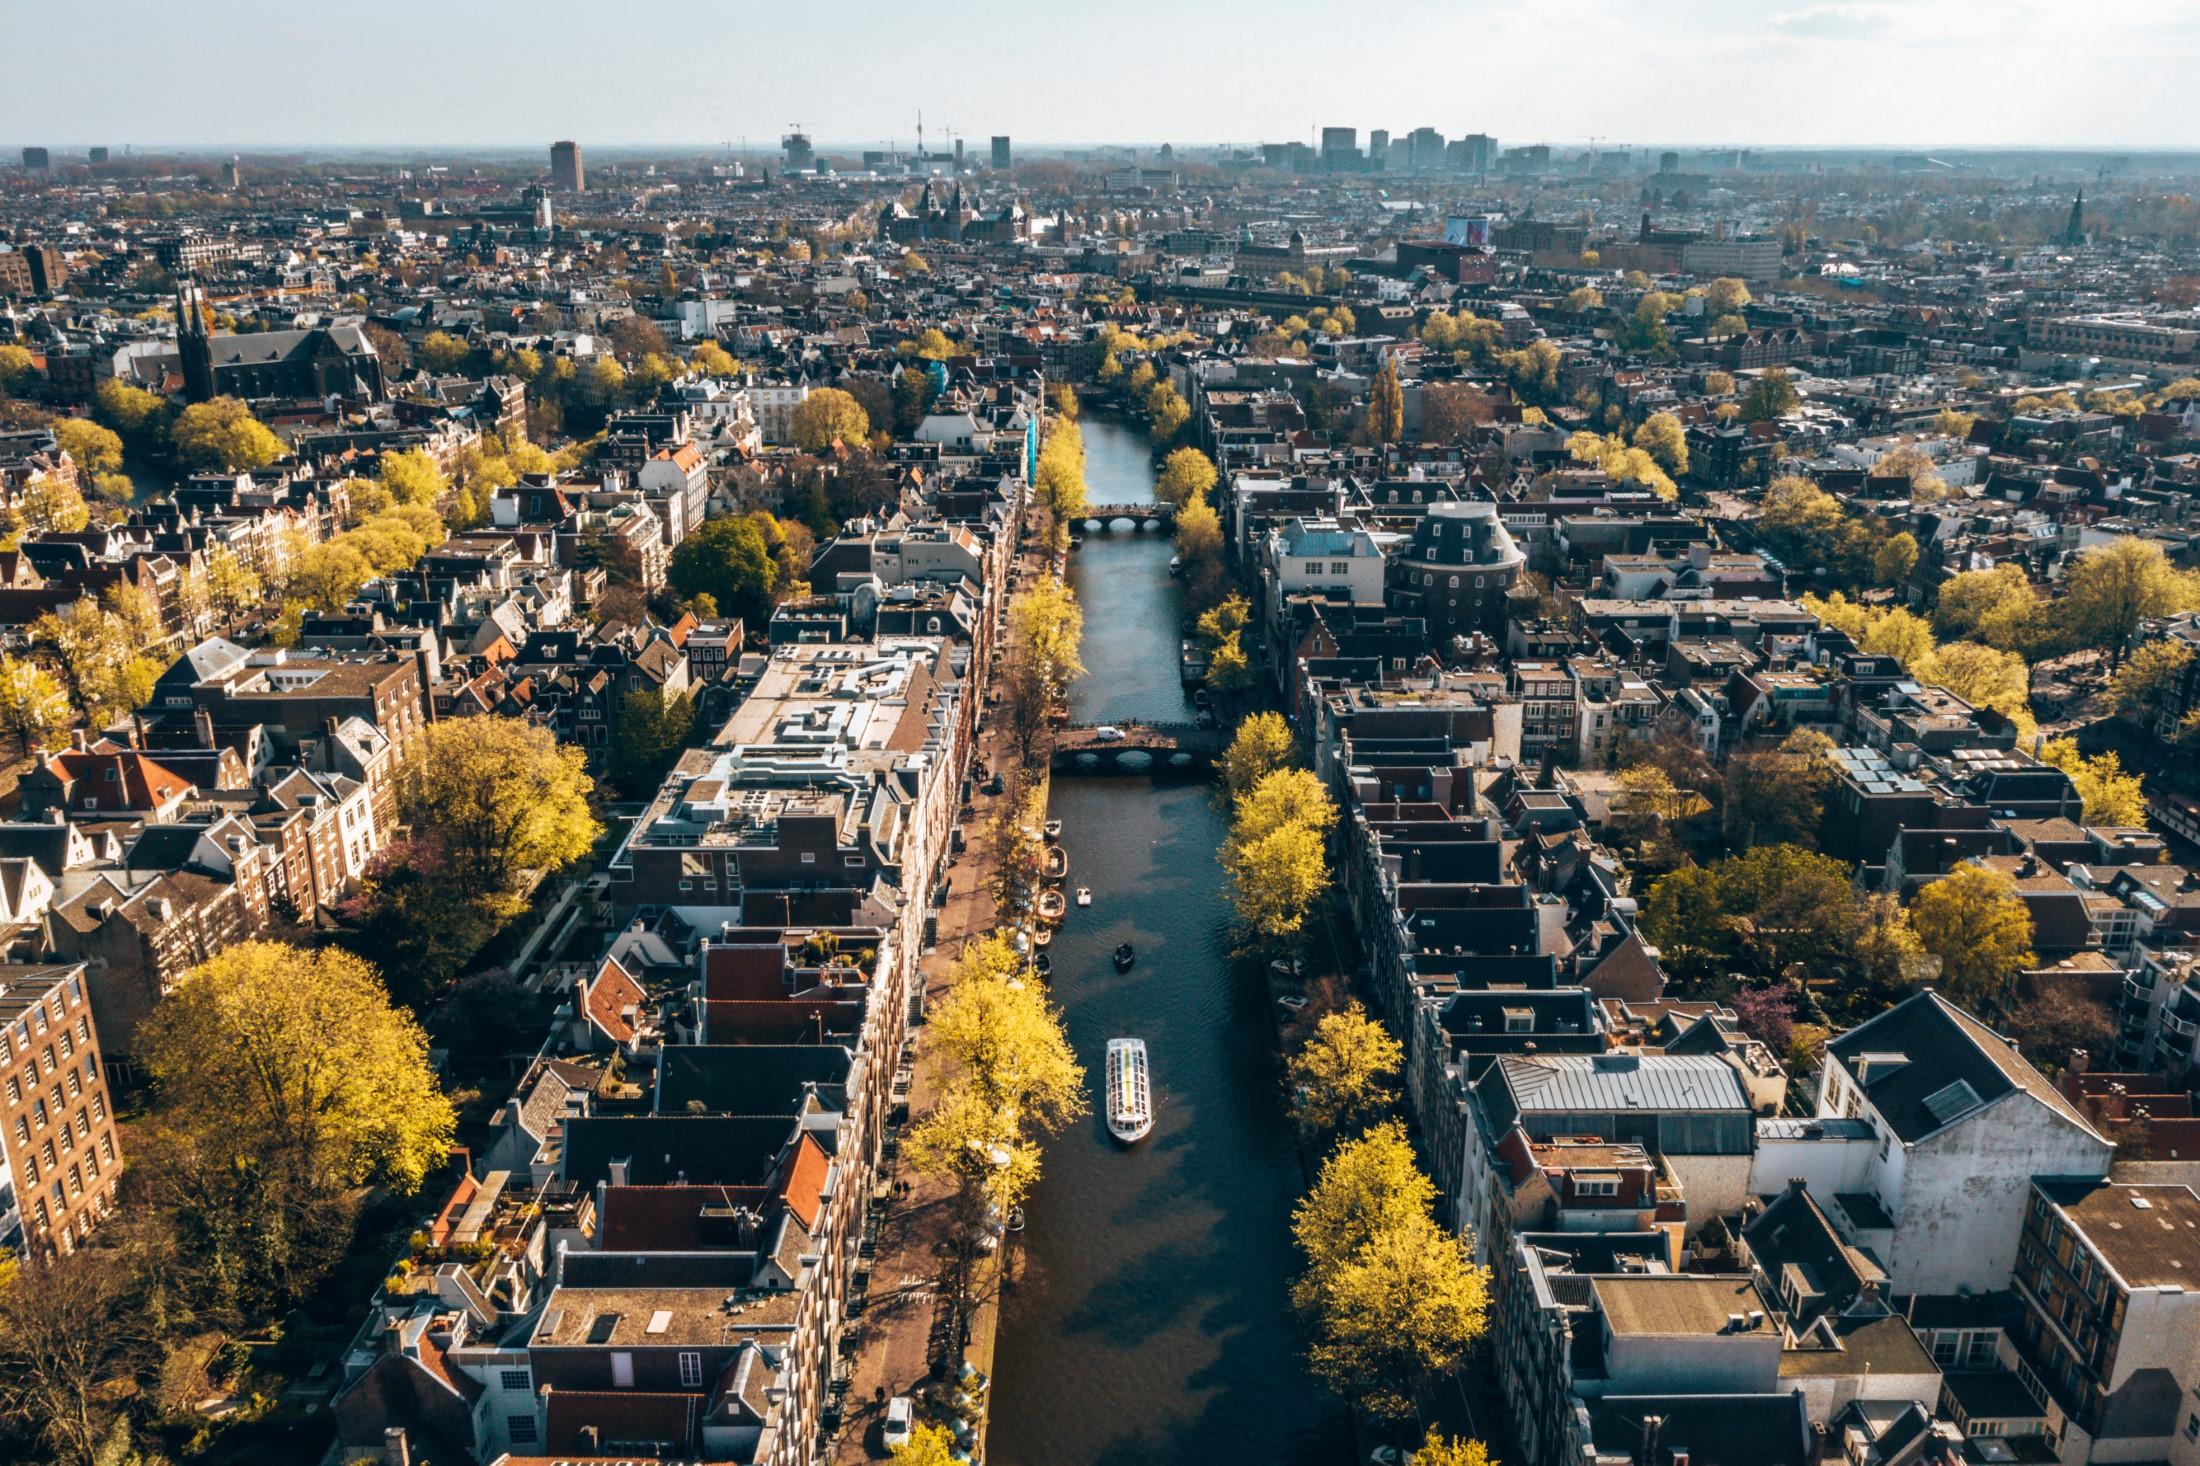 Piękny widok z lotu ptaka na Amsterdam z wieloma wąskimi kanałami, ulicami i architekturami.